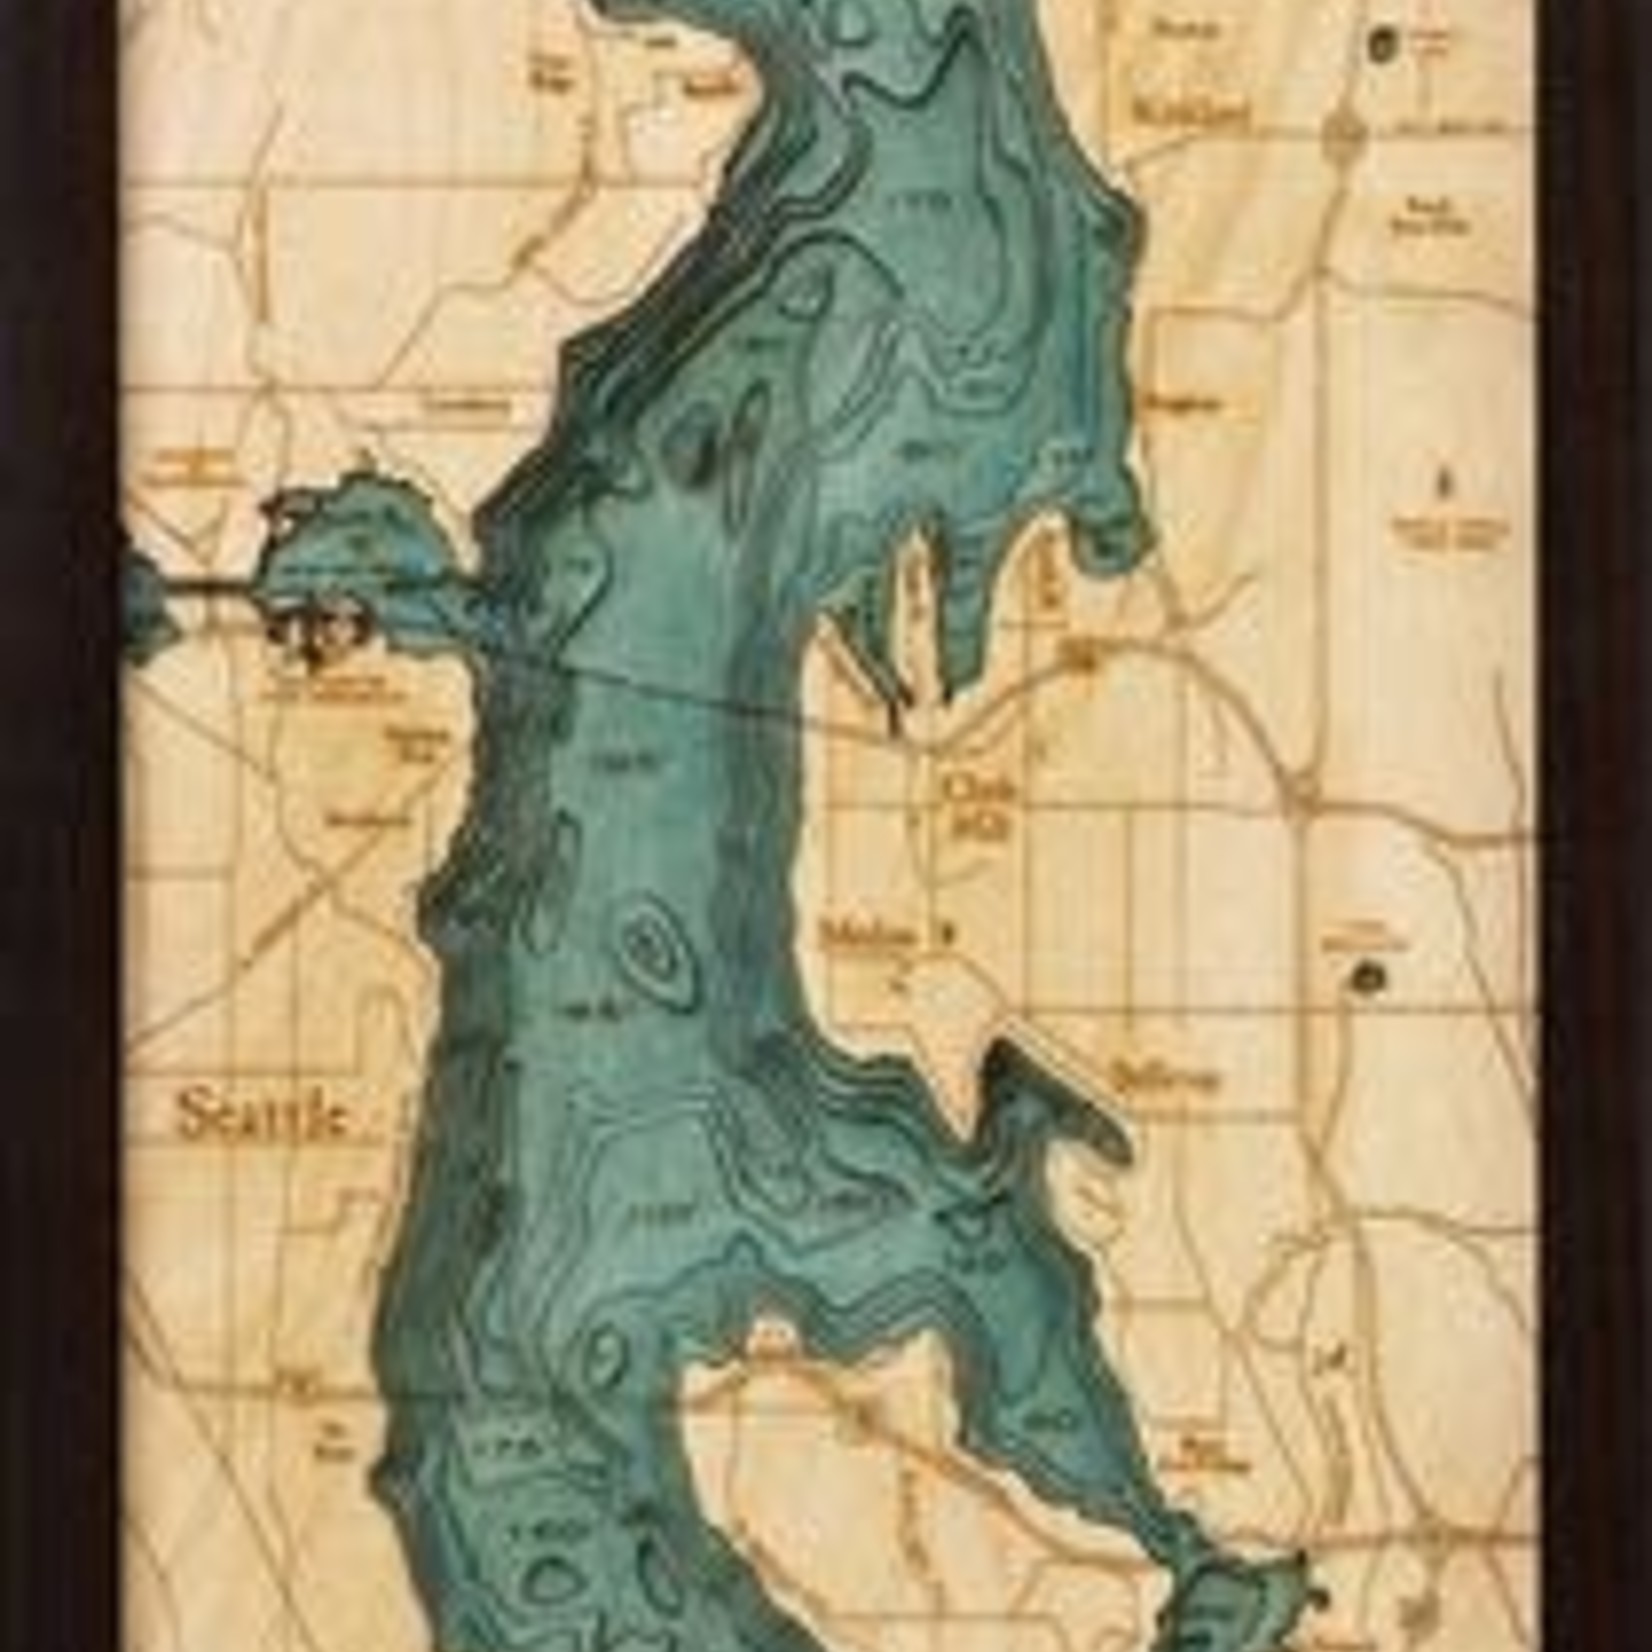 WoodChart Lake Washington, WA (Bathymetric 3-D Nautical WOODCHART)